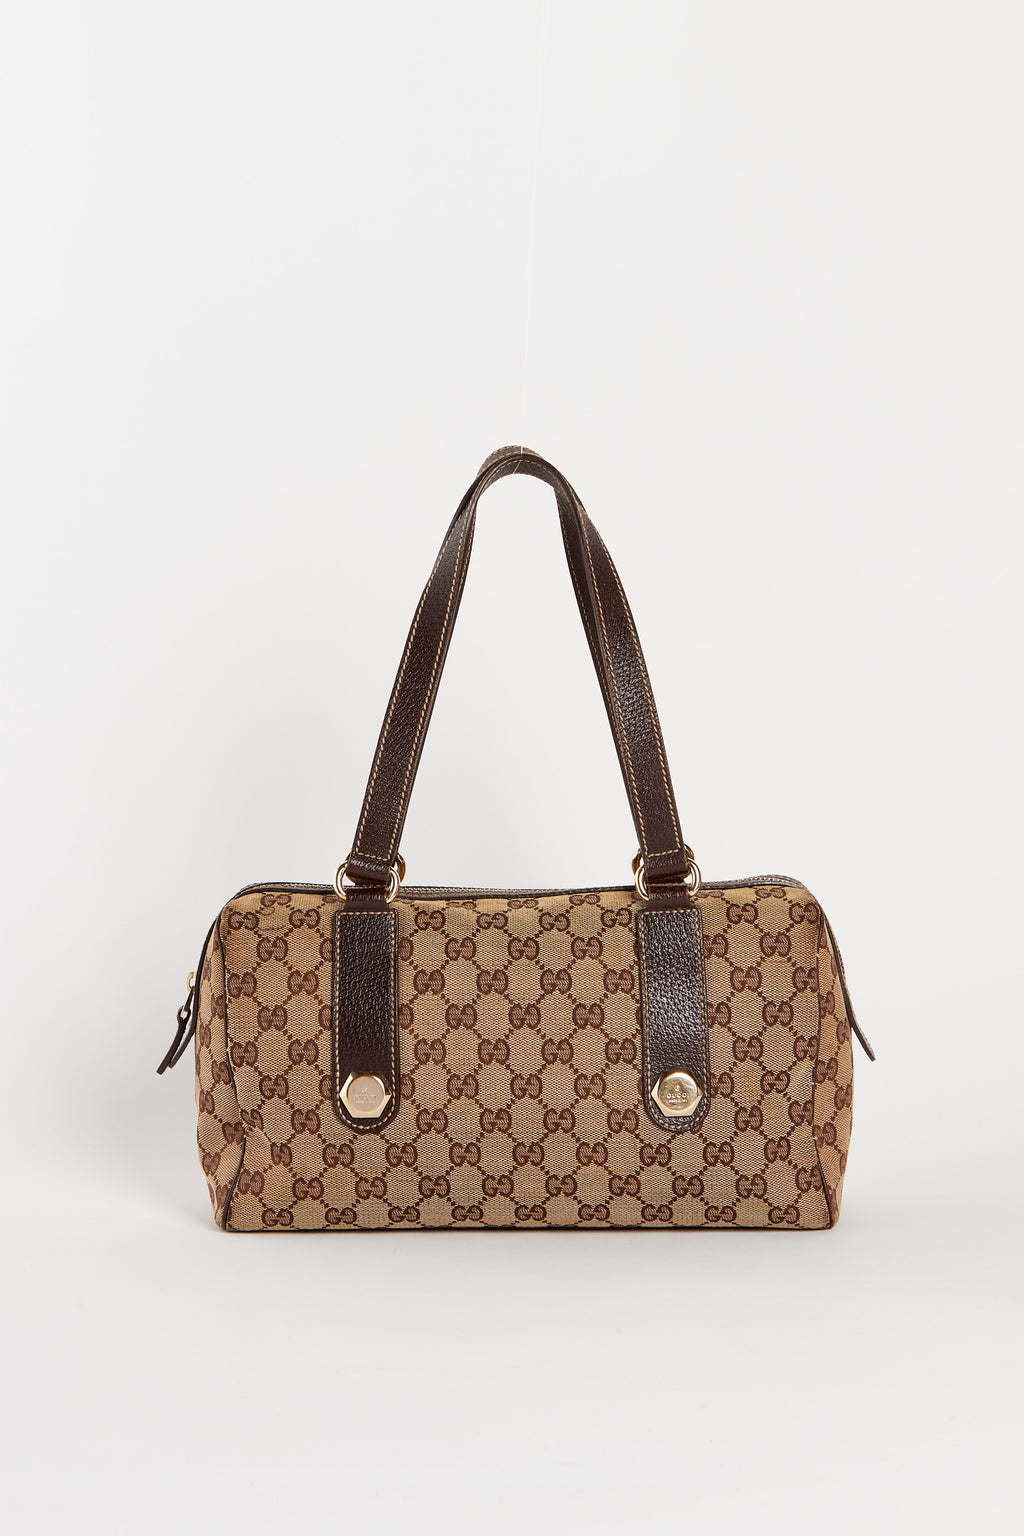 Vintage Gucci Brown Leather Shoulder Bag